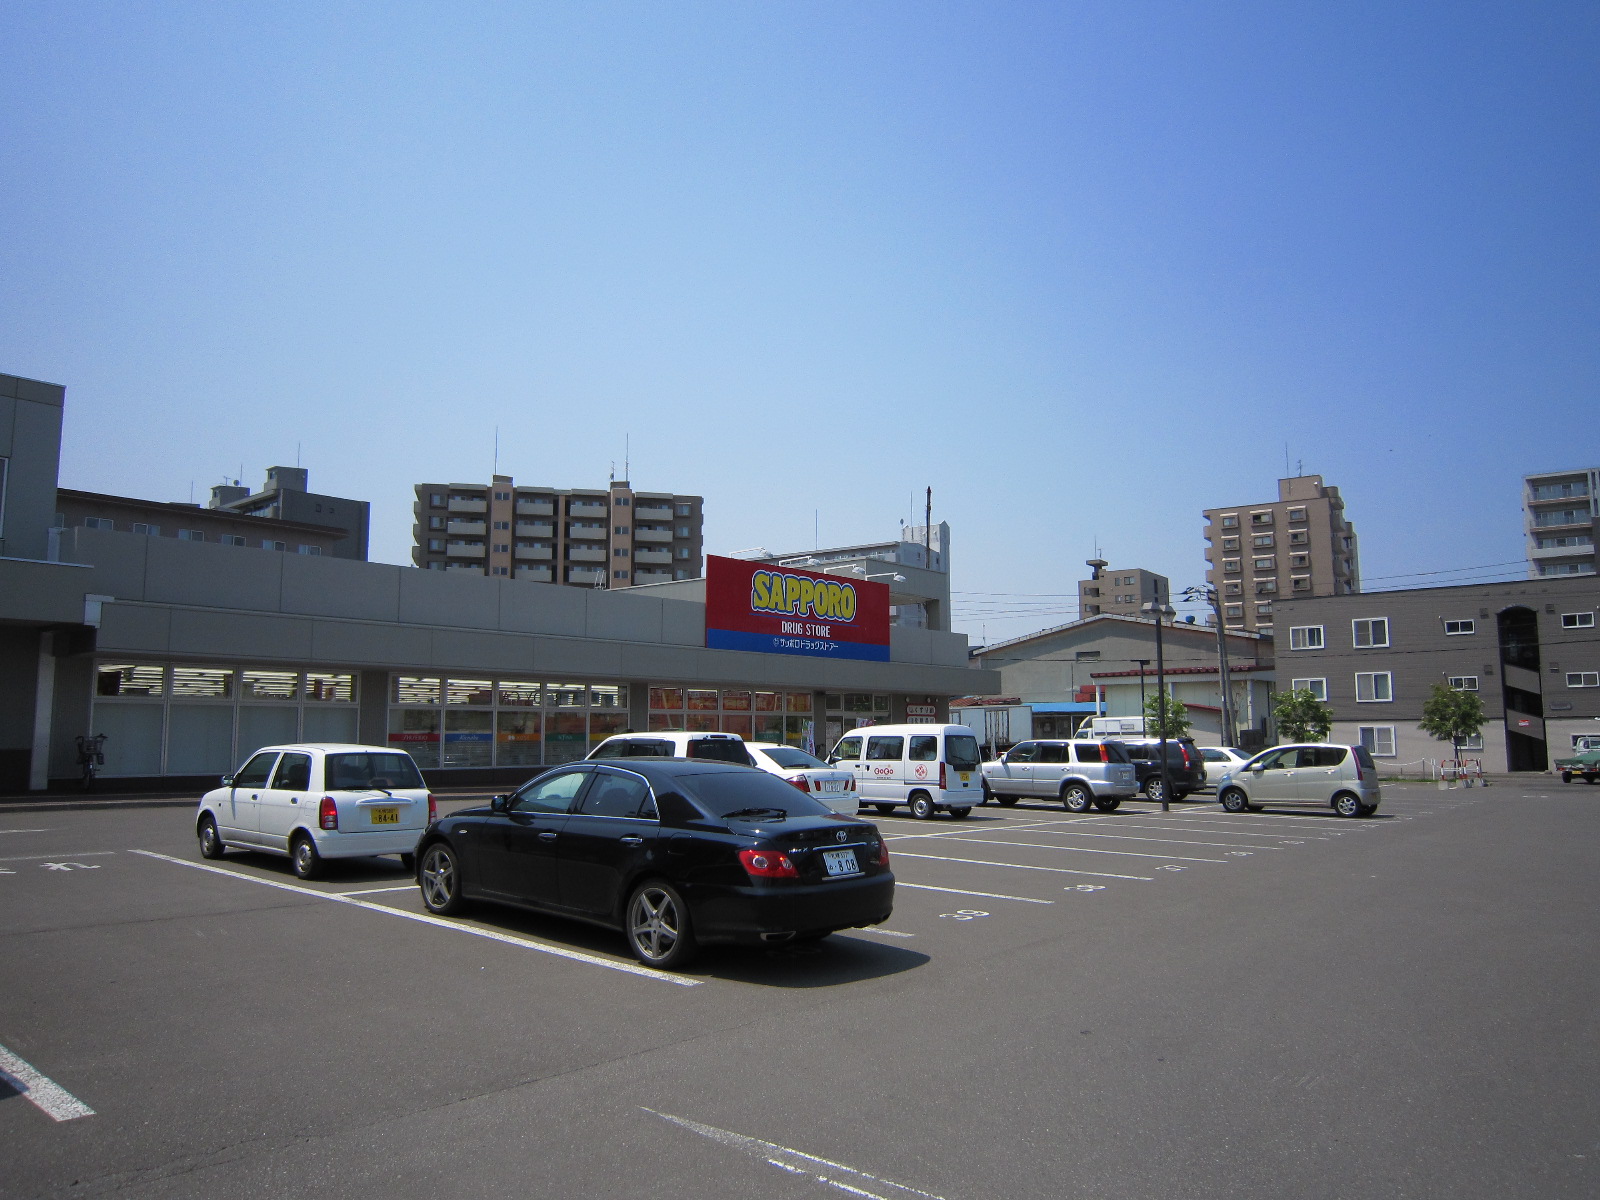 Dorakkusutoa. Sapporo drugstores Higashisapporo shop 1055m until (drugstore)